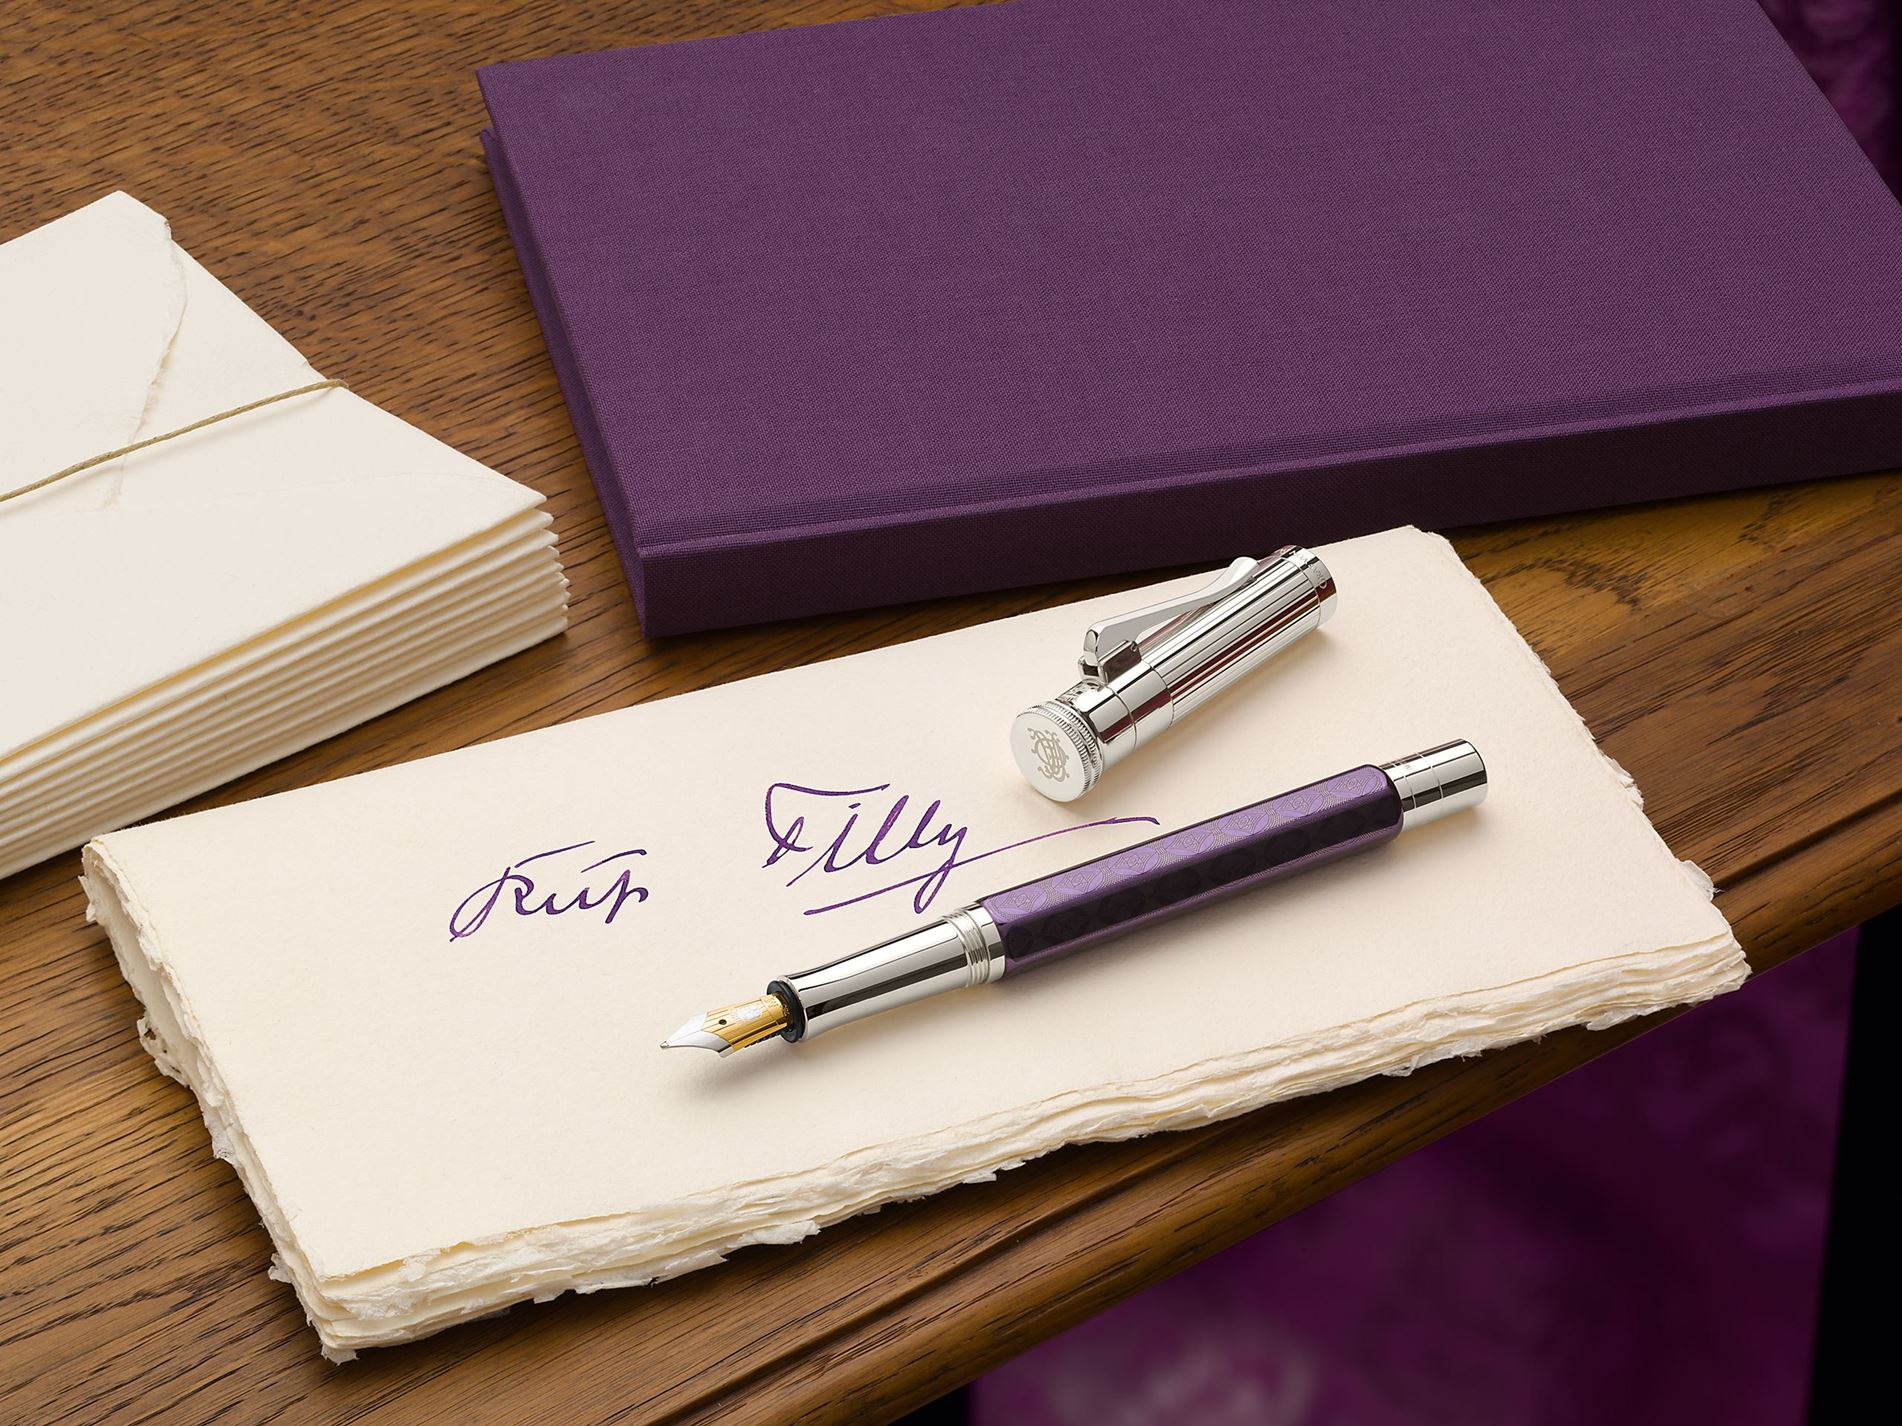 Das Bild zeigt eine handschriftliche Notiz "Für Tilly" in lila Tinte, zwei cremefarbene Umschläge und eine lila Schachtel.